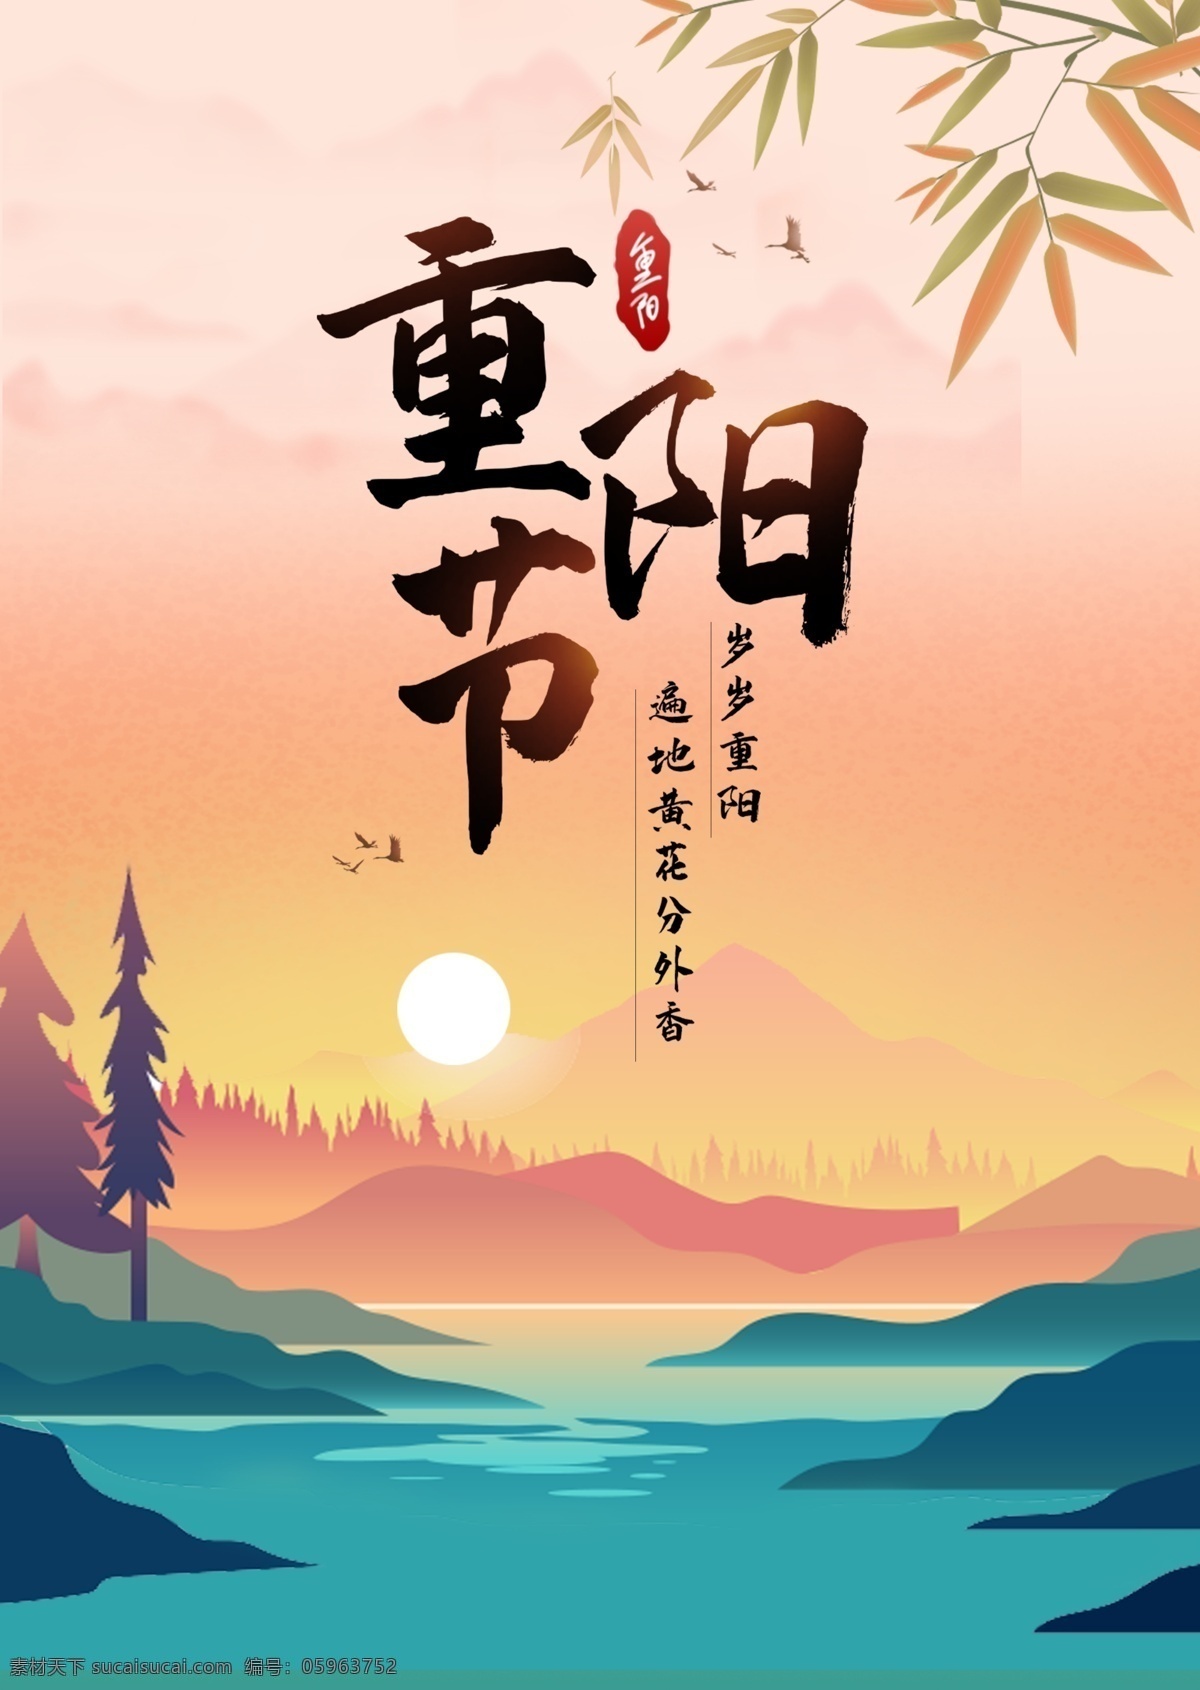 重阳节 时节 中国 传统节日 传统 节日 海报 落日 插画 手绘 景色